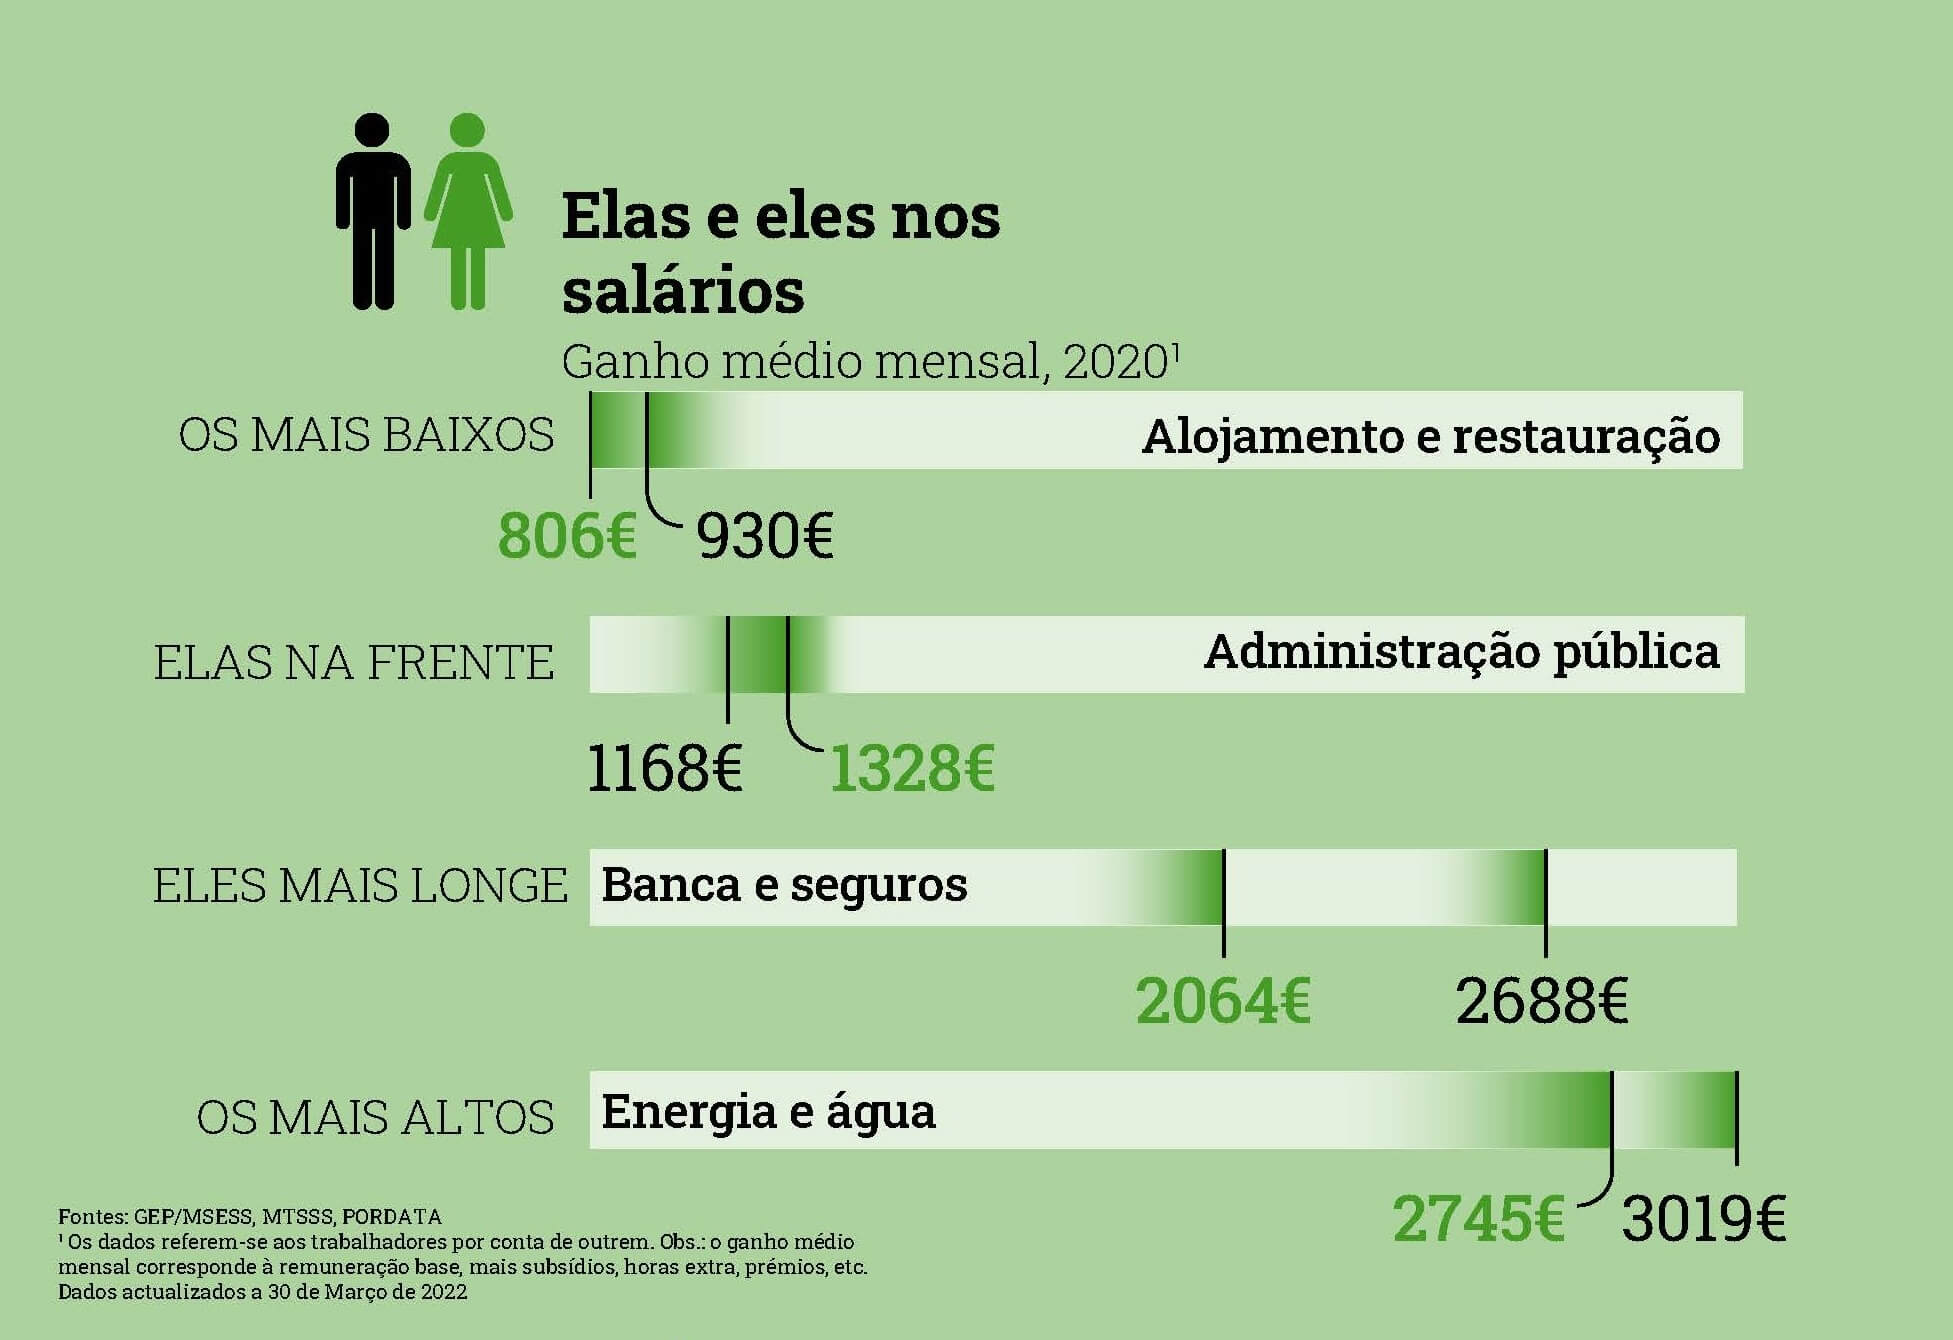 средние зарплаты в Португалии